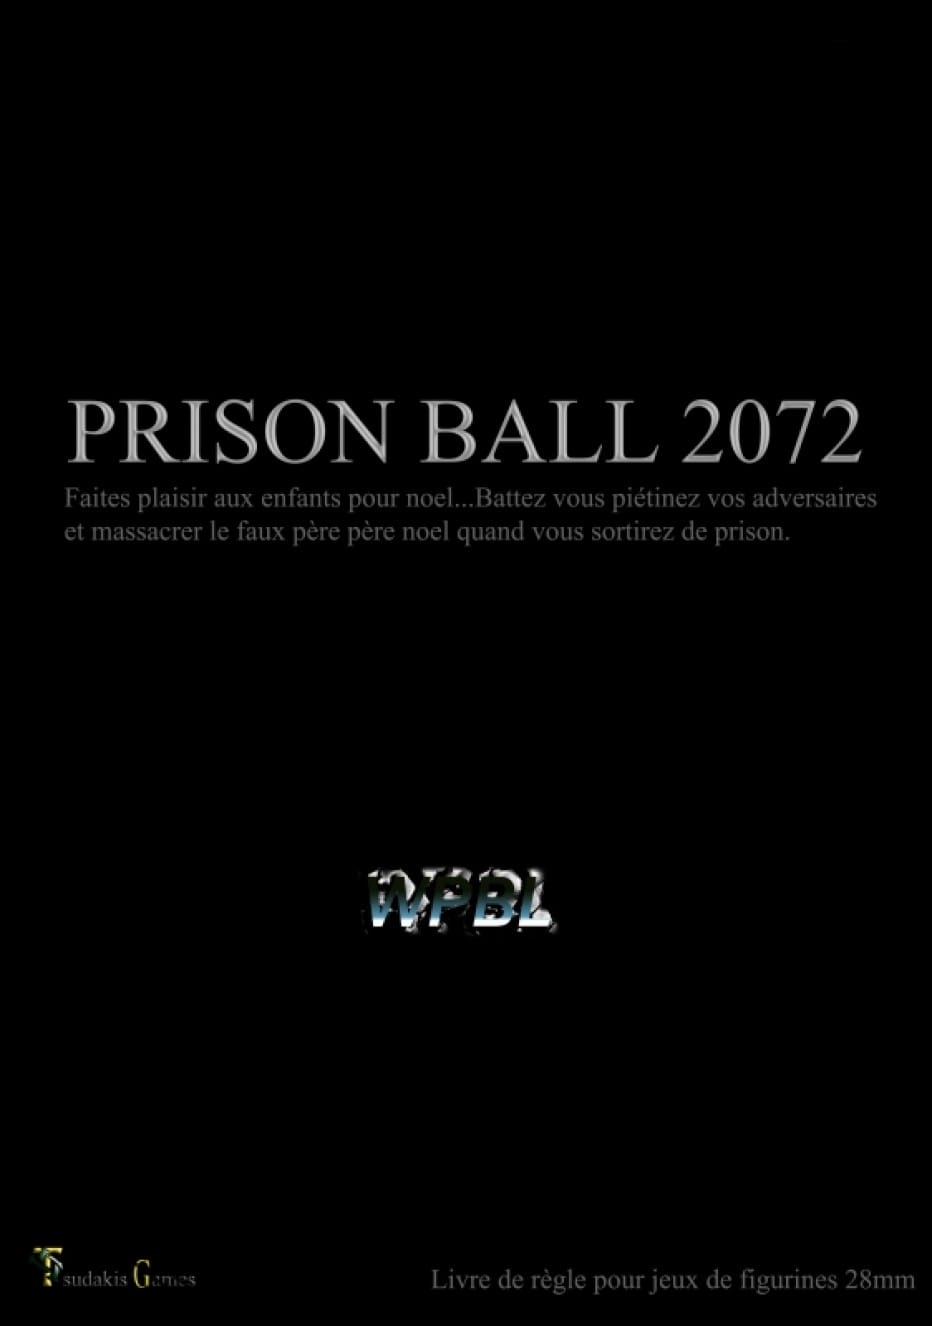 Prison ball 2072